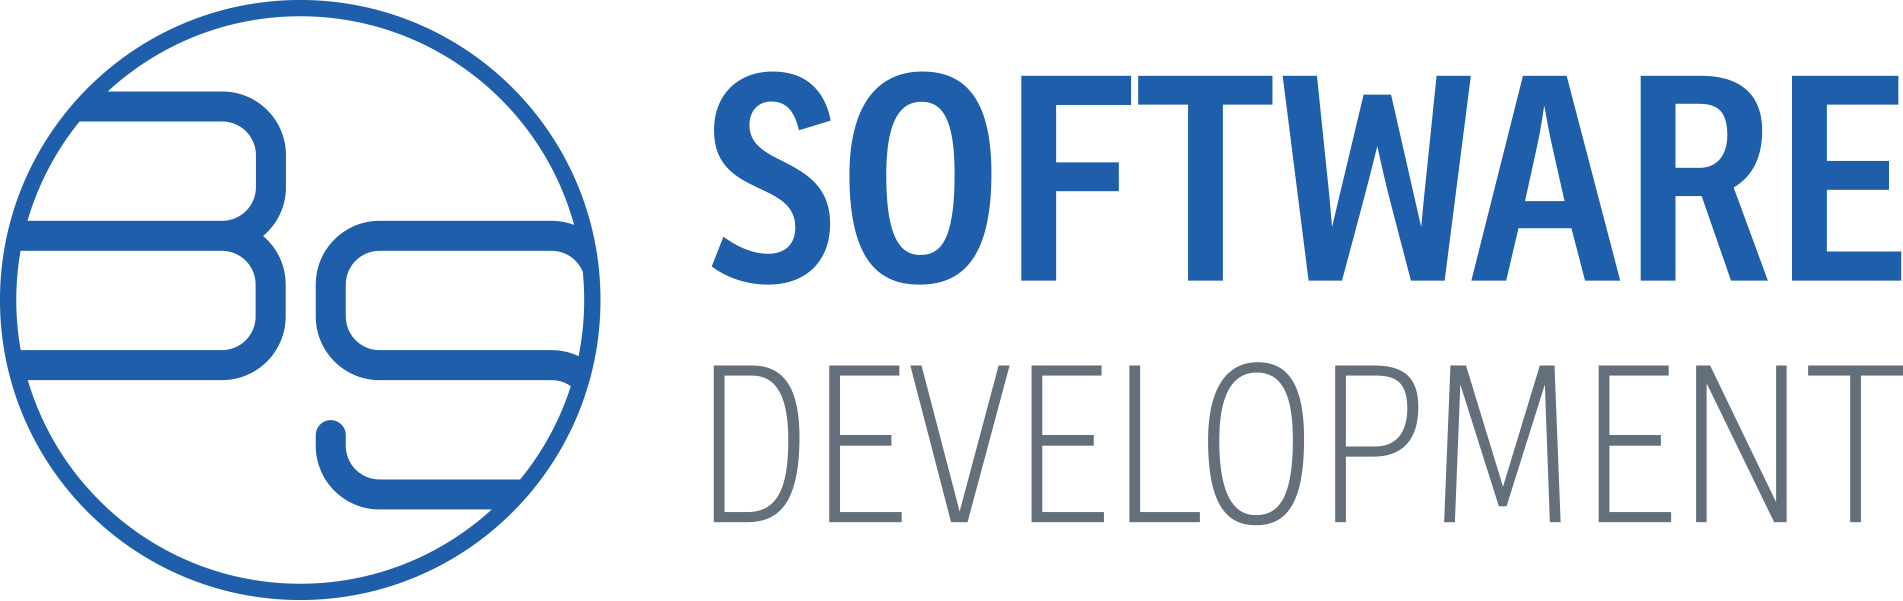 BS software development Logo